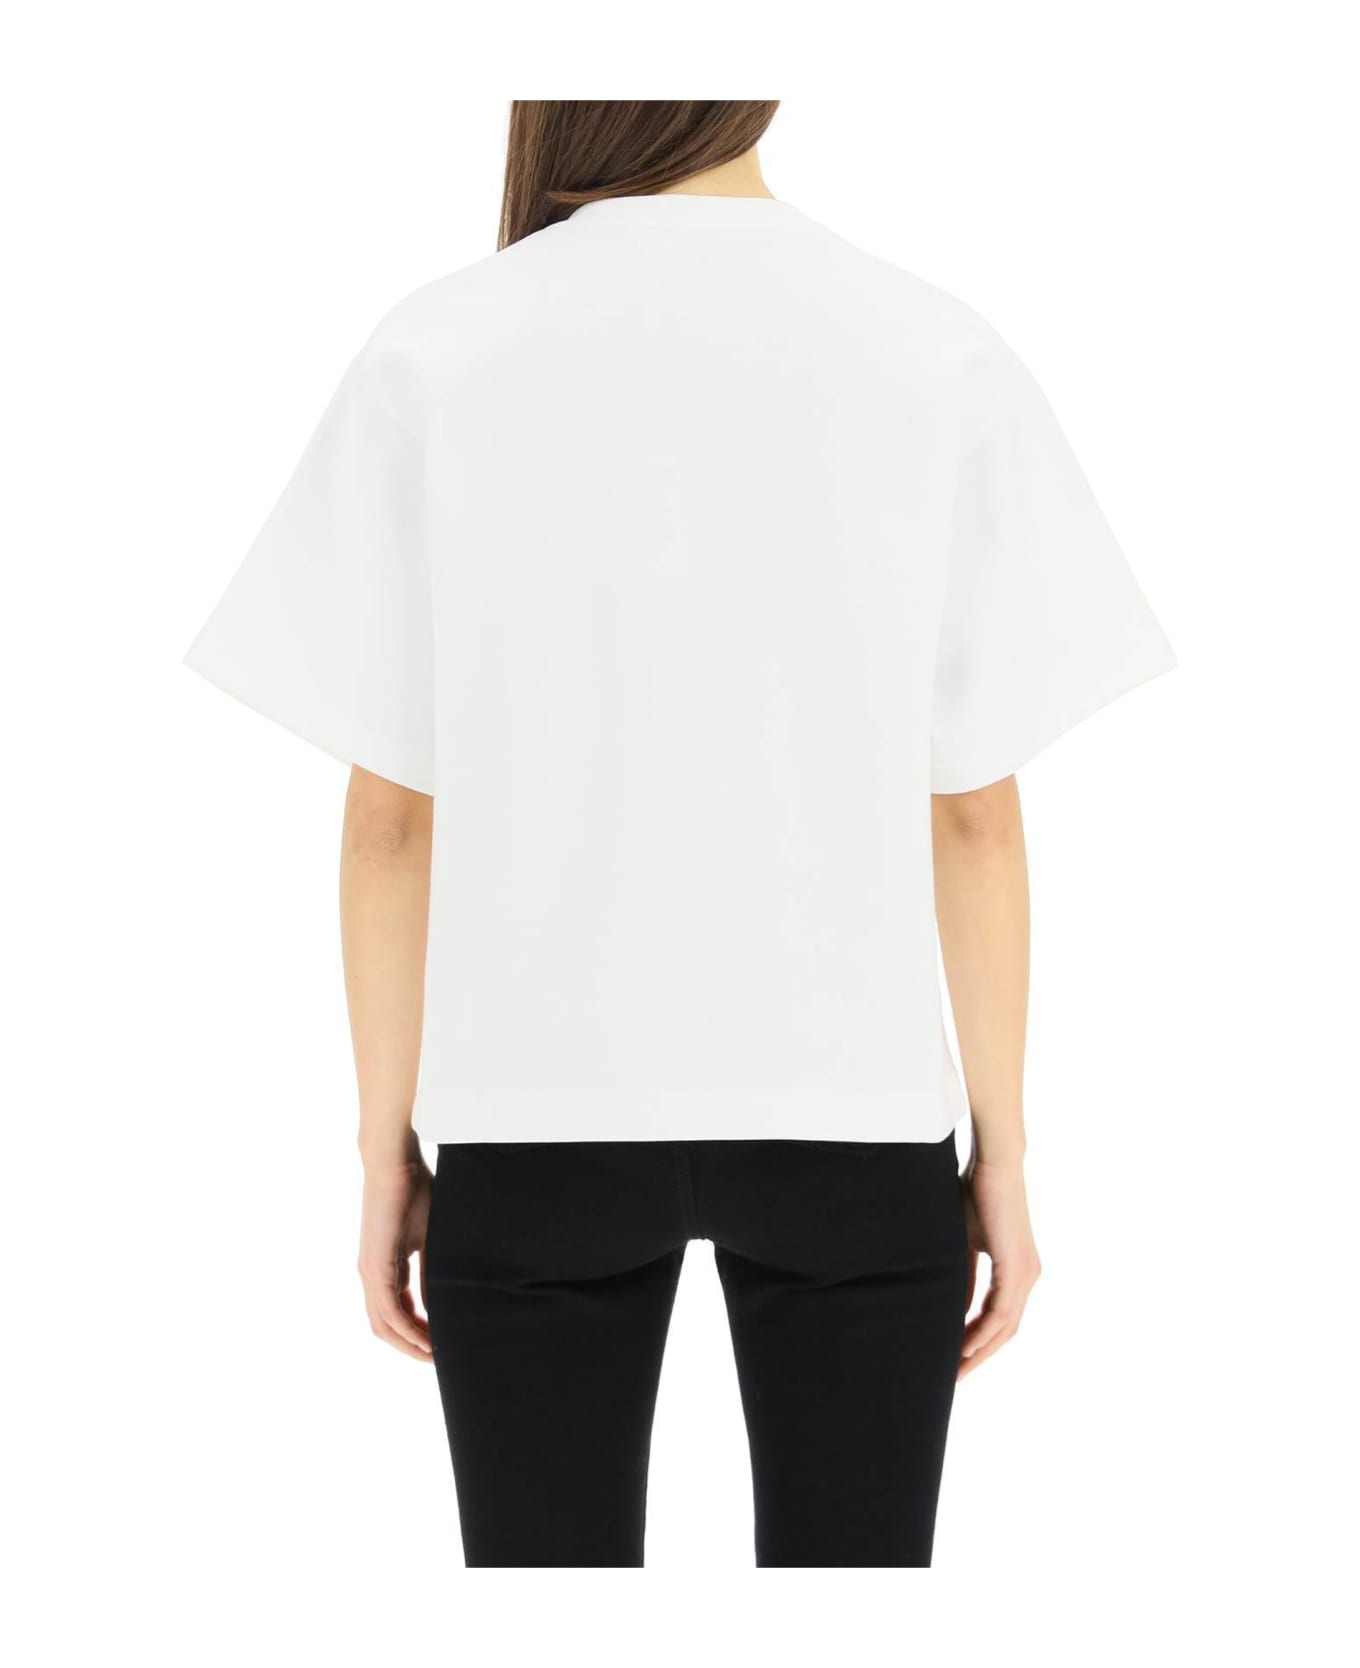 Dolce & Gabbana Hot T-shirt - White